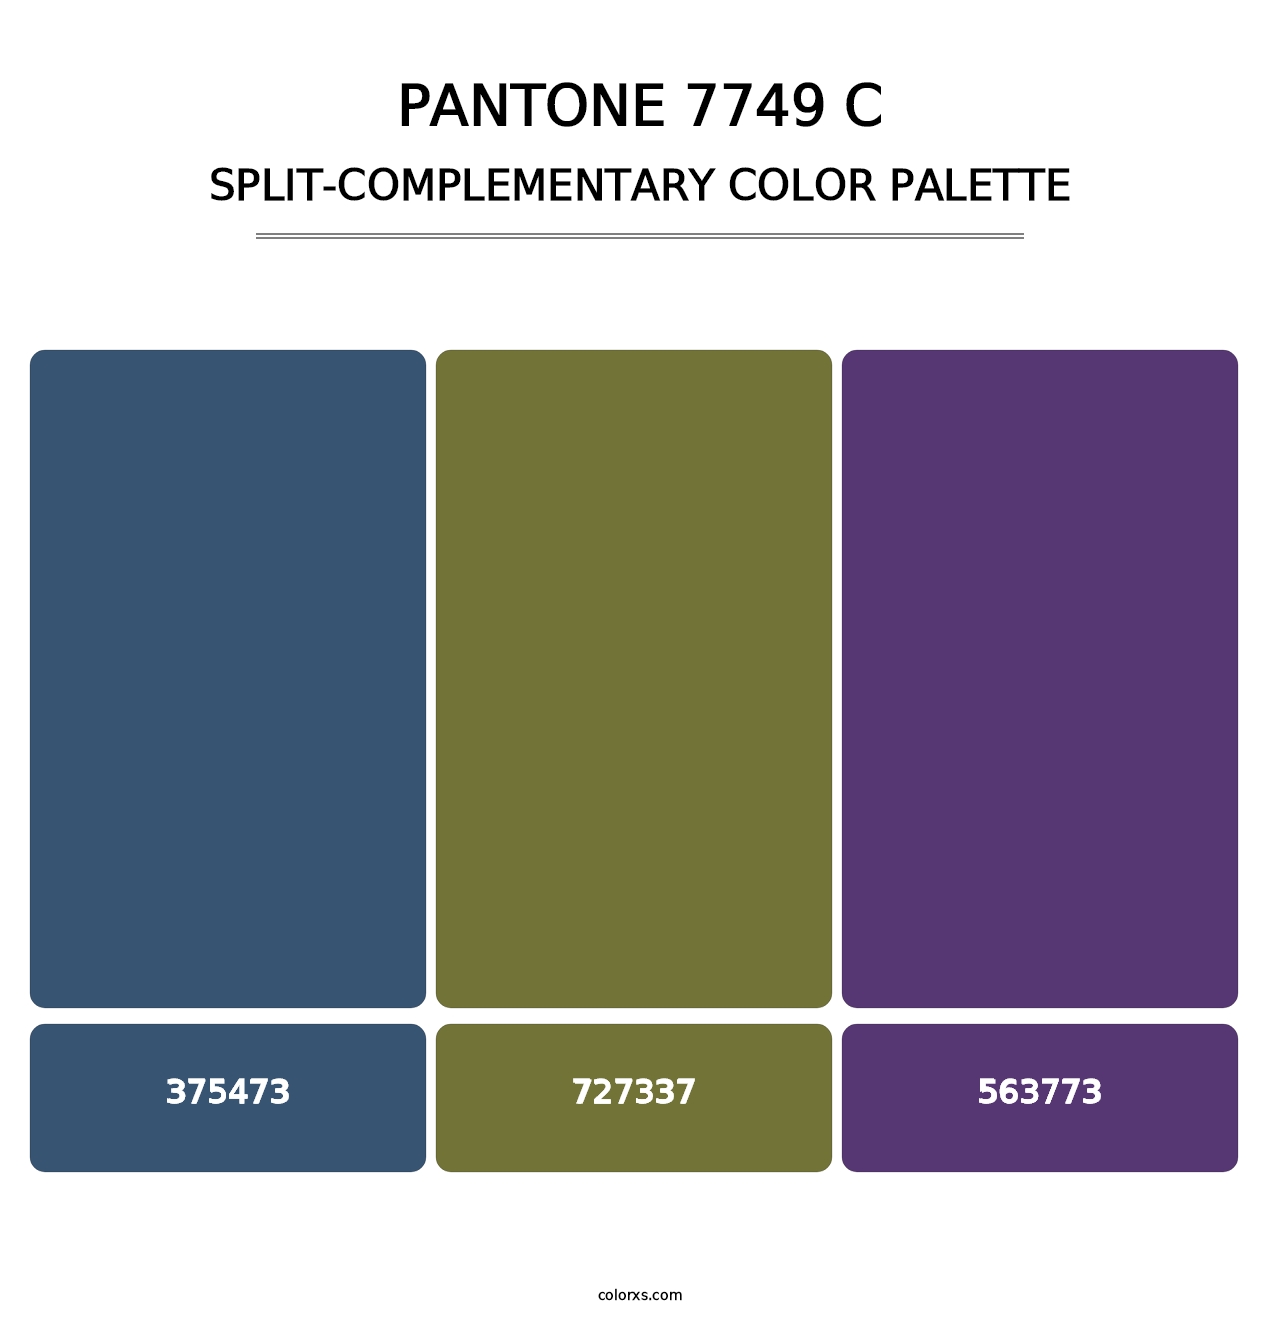 PANTONE 7749 C - Split-Complementary Color Palette